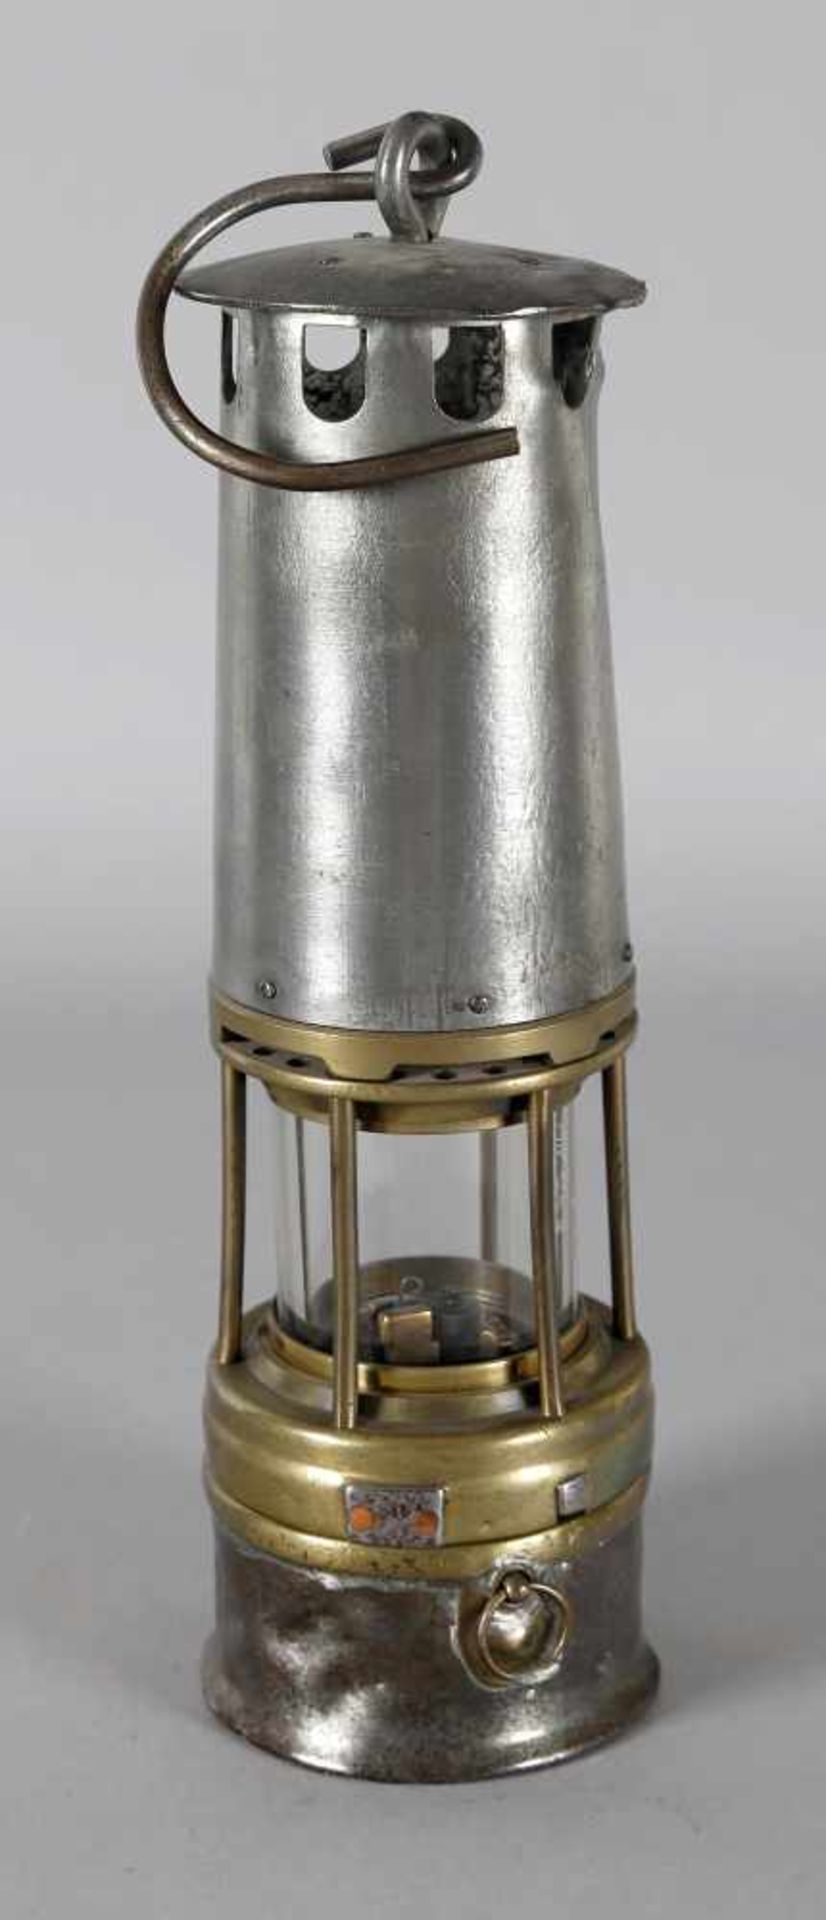 Benzinwetterlampe, Arras, um 1935Eisen und Messing, Magnetverschluss von der Topfseite zu